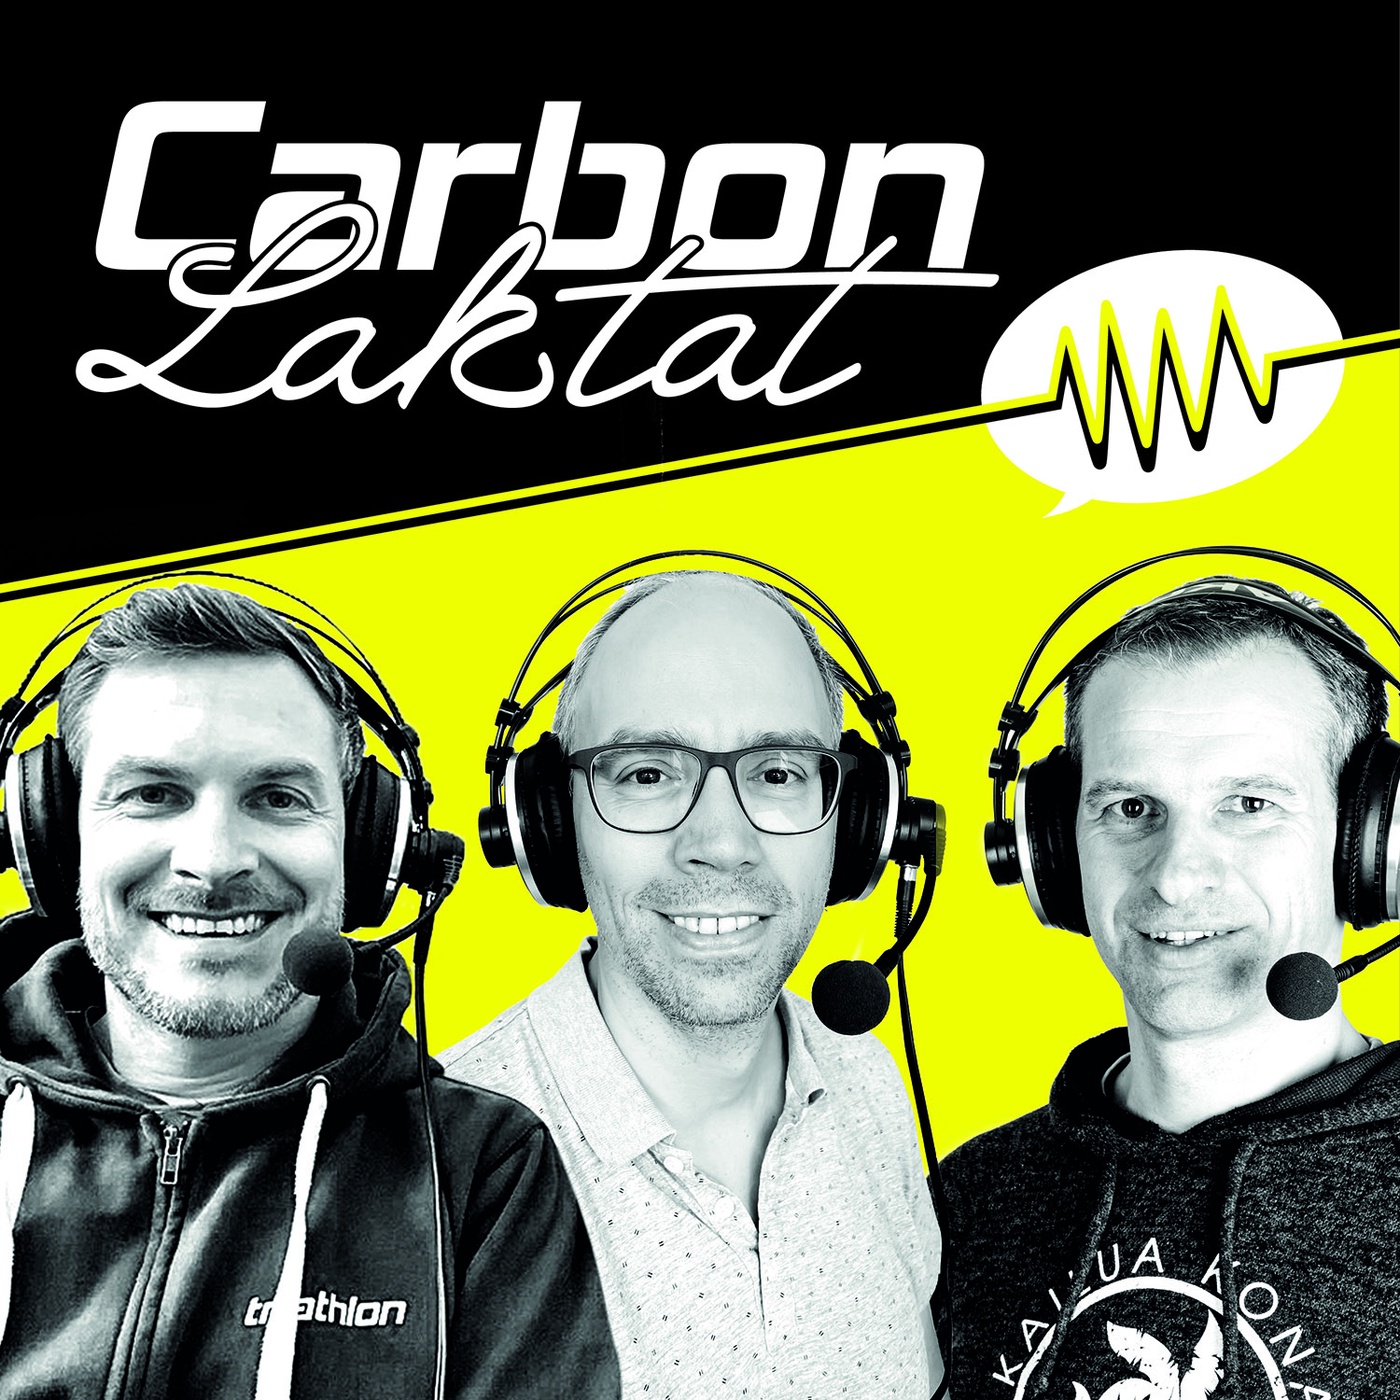 Carbon & Laktat: Rasante Action und ein Hauch von Olympia in Hamburg